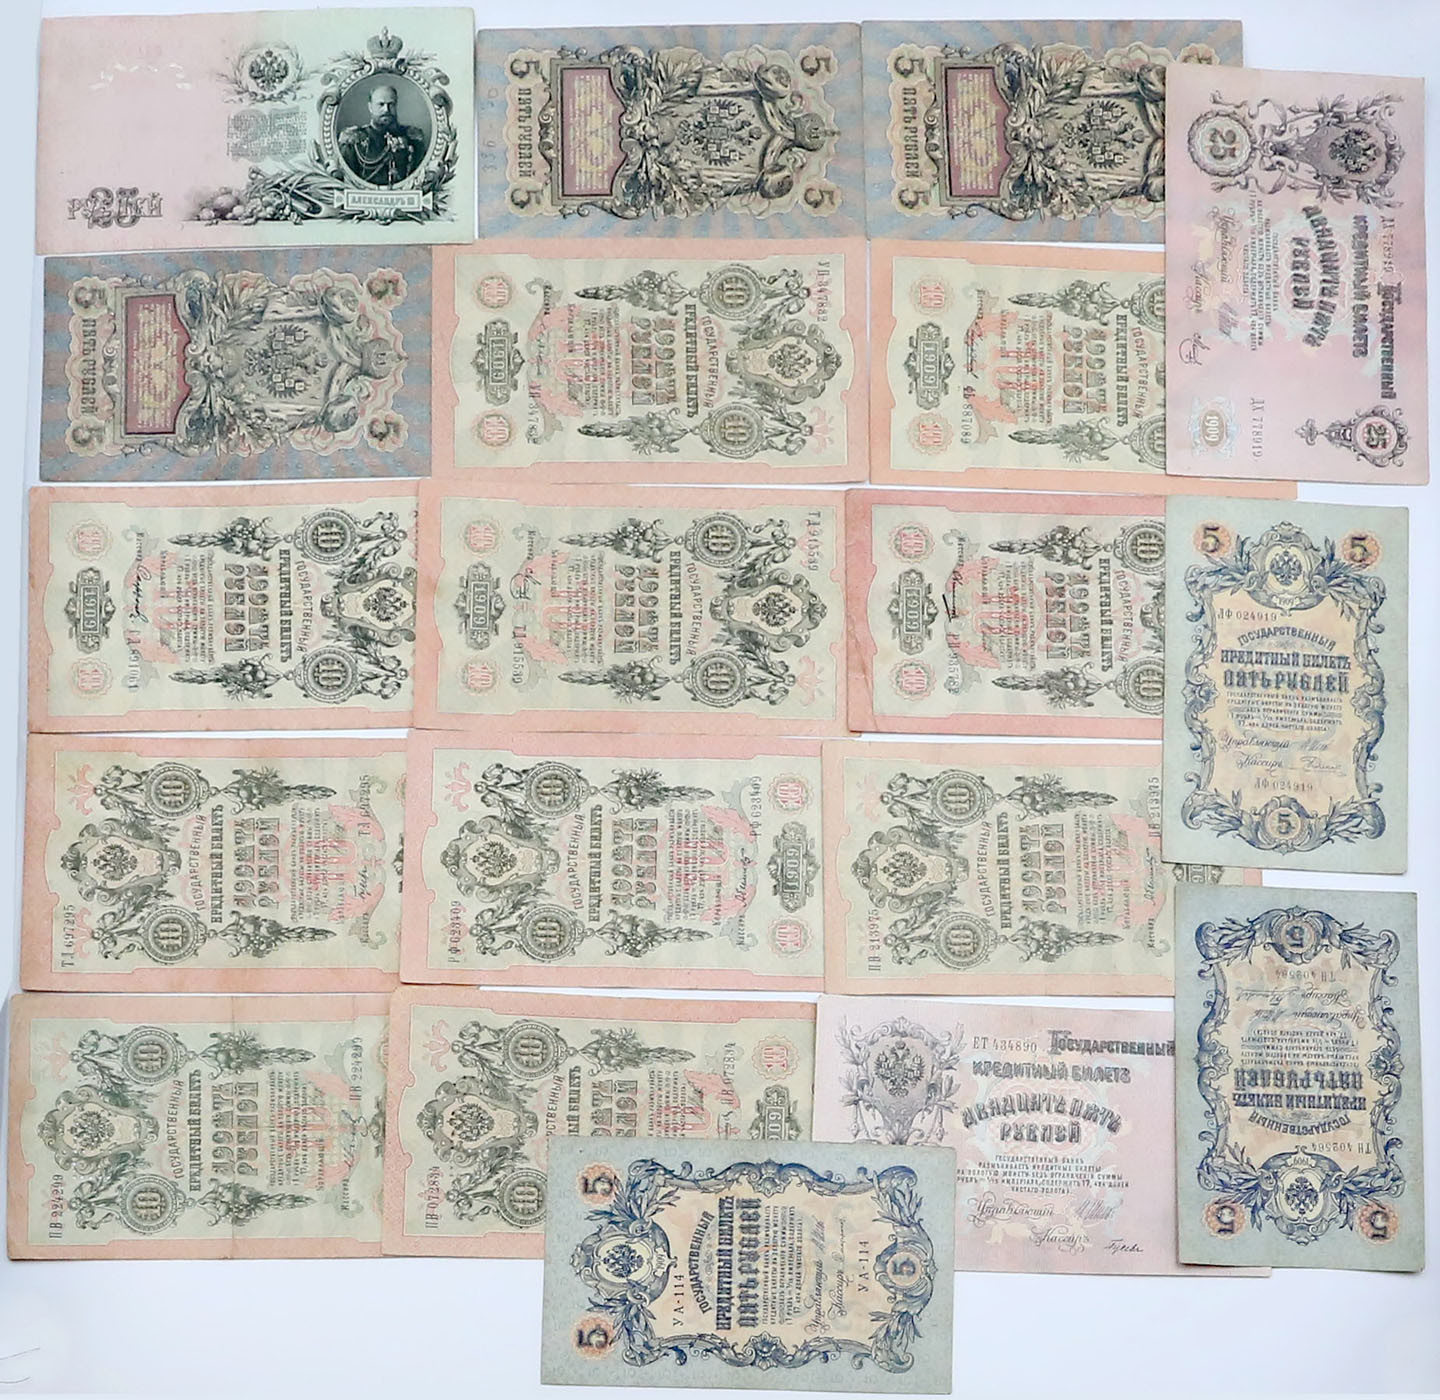 Rosja. 1-25 rubli 1909, zestaw 58 banknotów